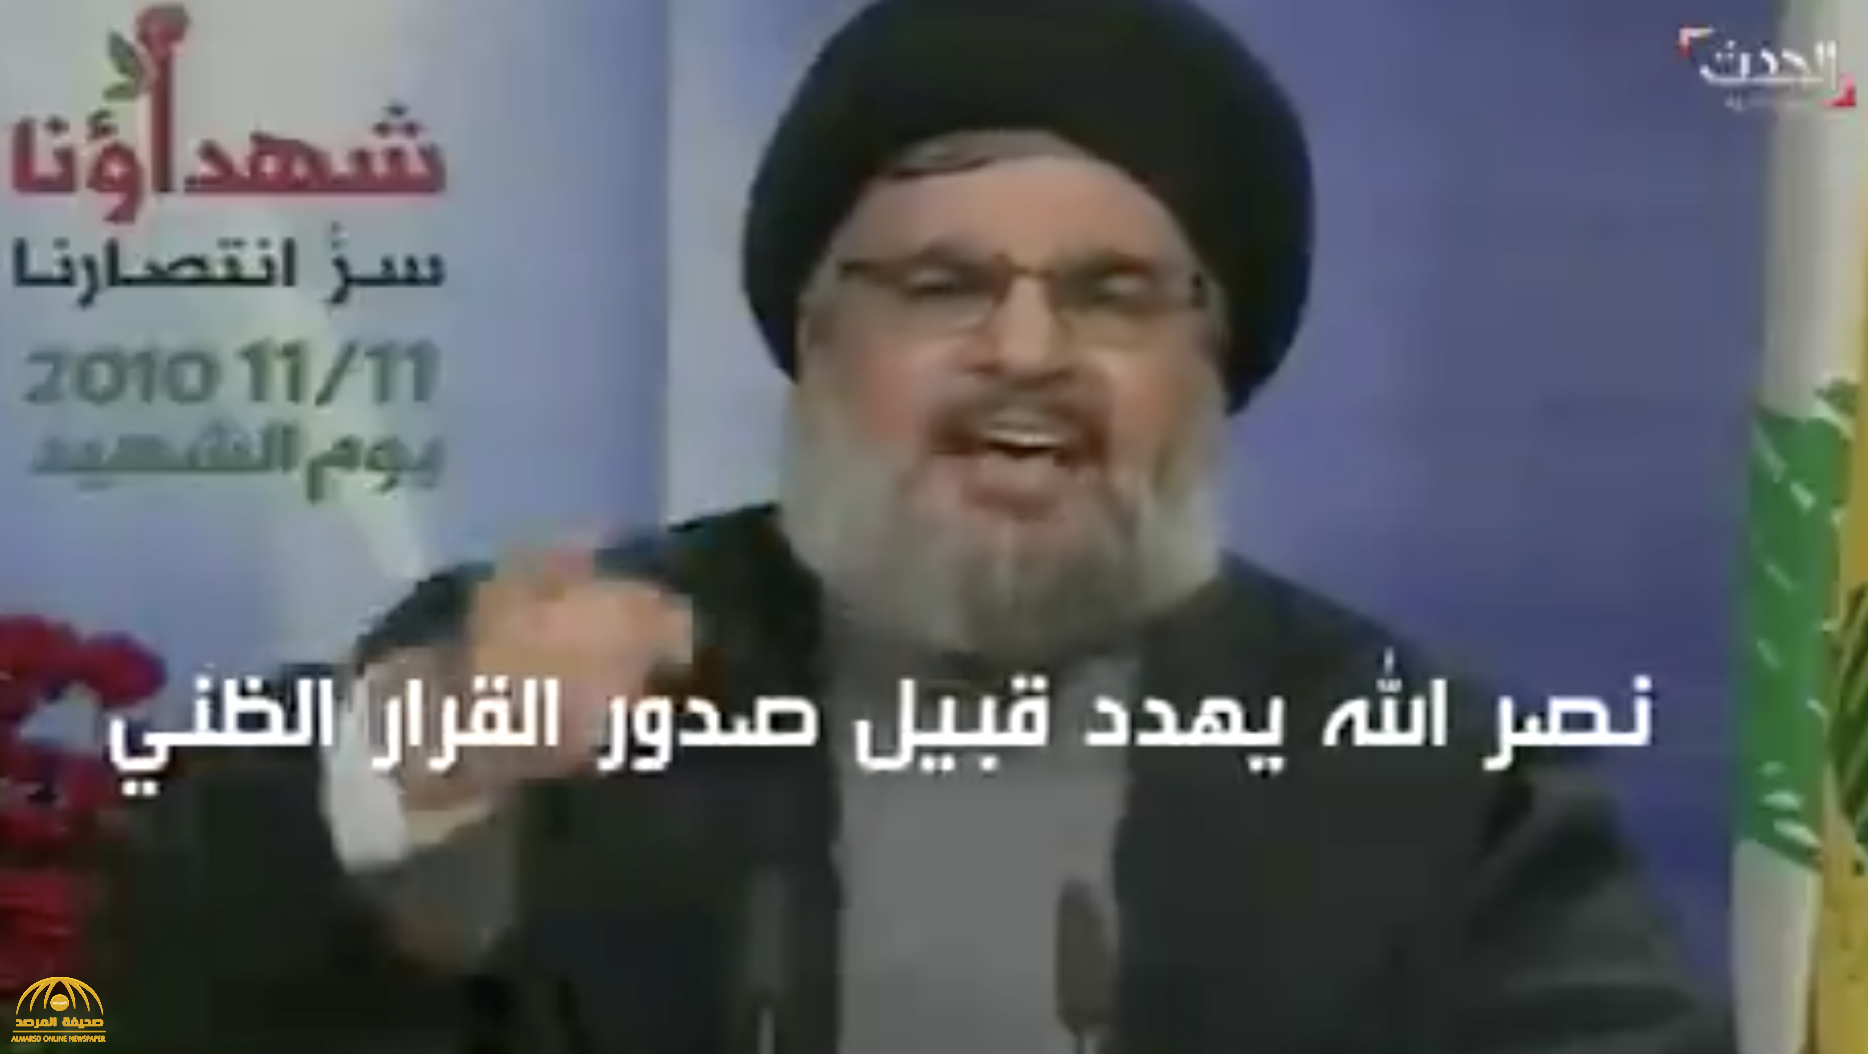 شاهد: فيديو قديم لـ" حسن نصر الله" يؤكد العناصر المتورطين في اغتيال "الحريري" من ضمن  المجاهدين في حزب الله